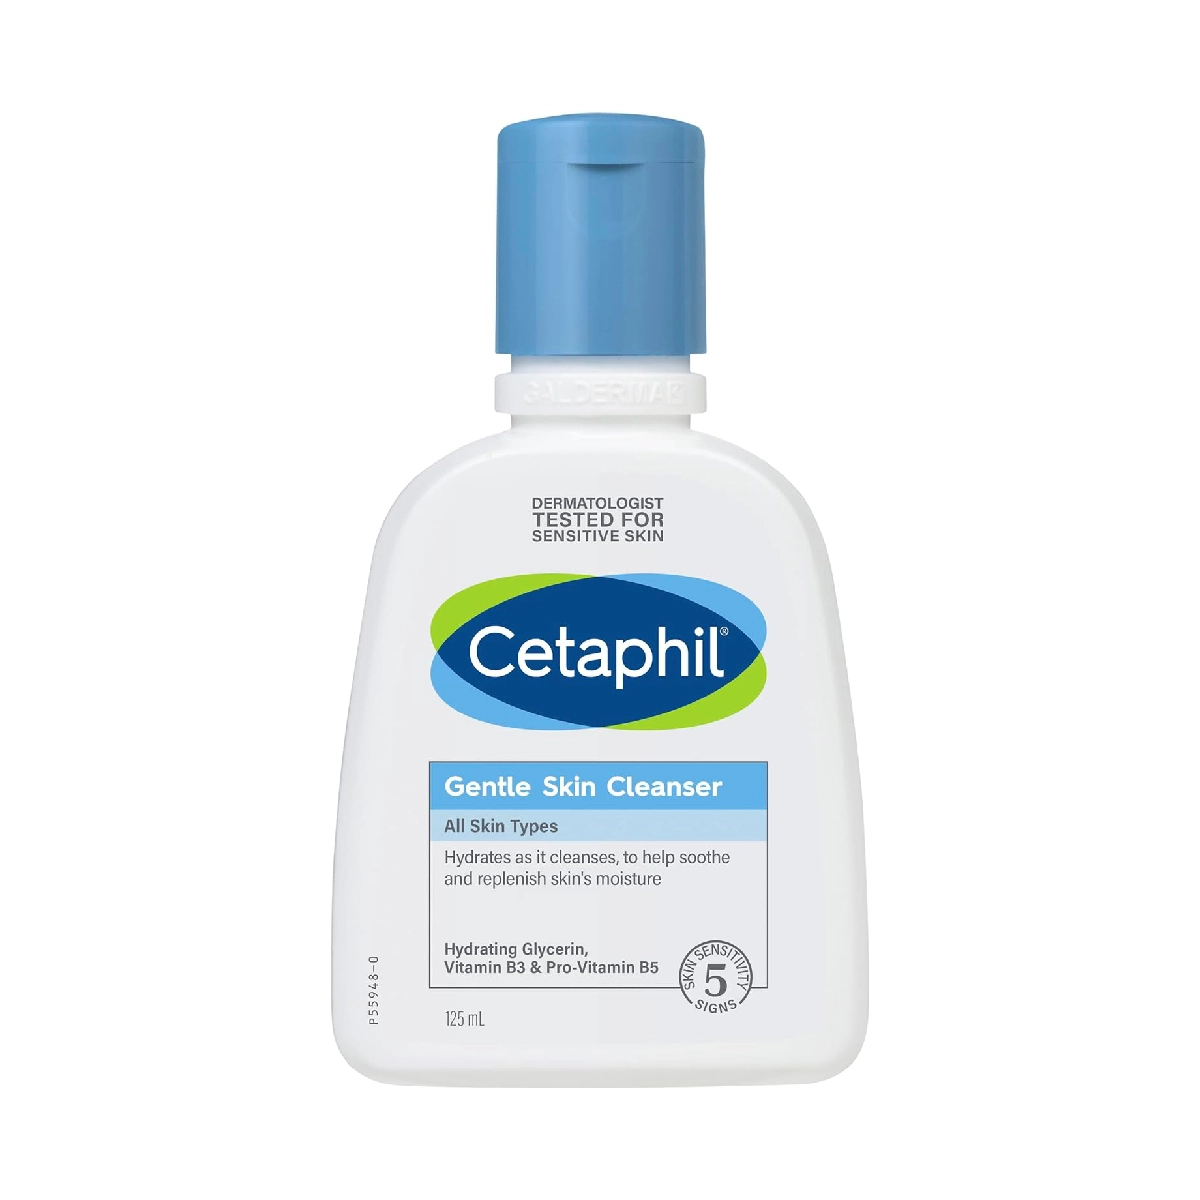 Cetaphil Gentle Skin Cleanser - Mild Cleansing for Sensitive Skin